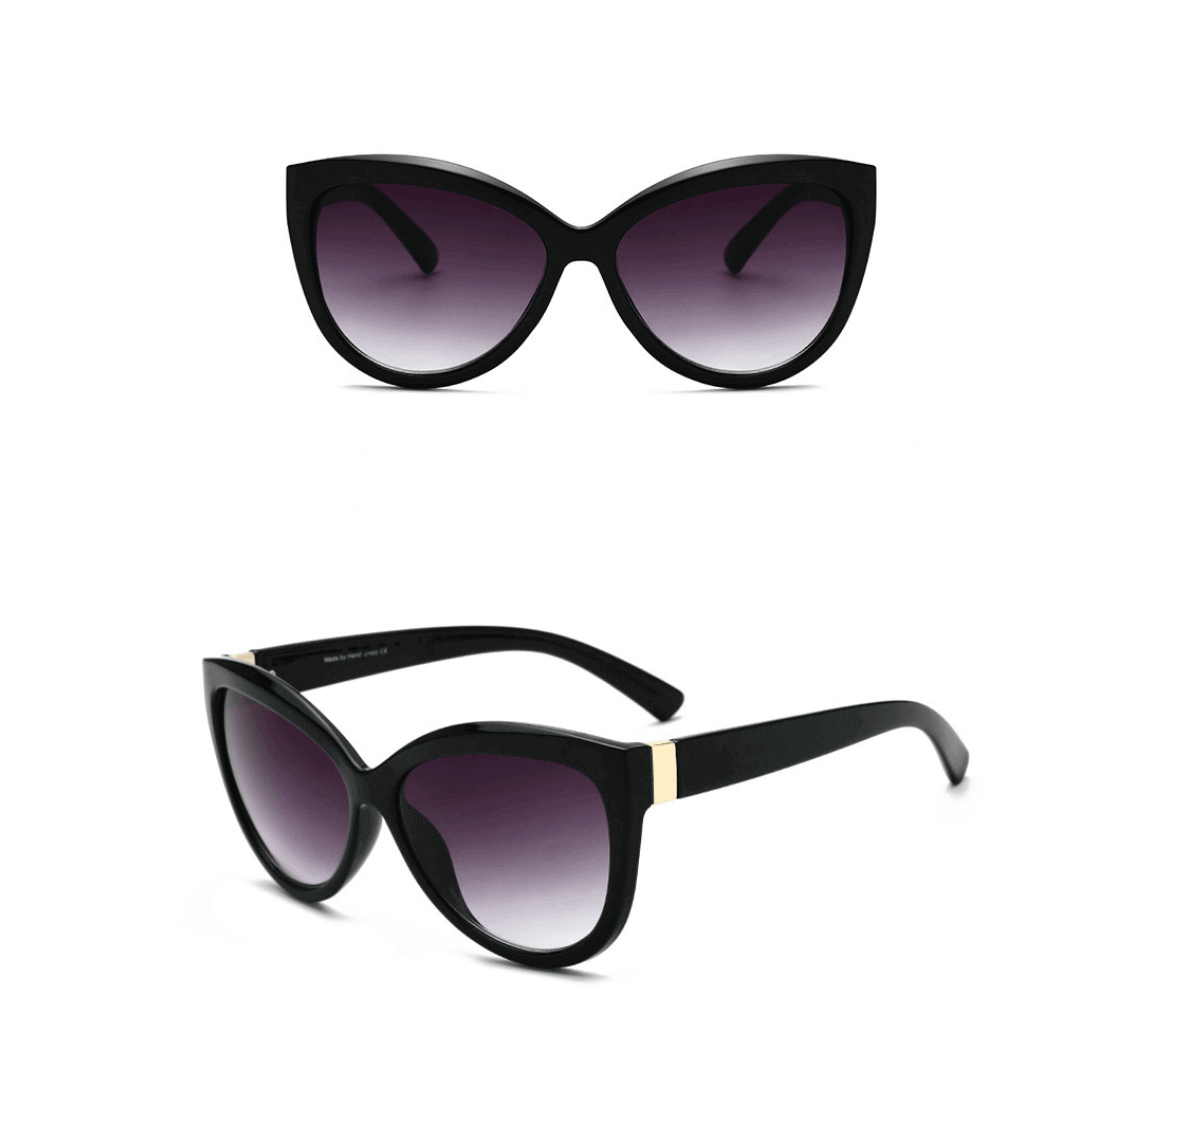 cheap wholesale designer sunglasses, wholesale cat eye sunglasses, cat eye sunglasses wholesale, cat eye sunglasses bulk, cheap wholesale sunglasses by the dozen, sunglasses factory